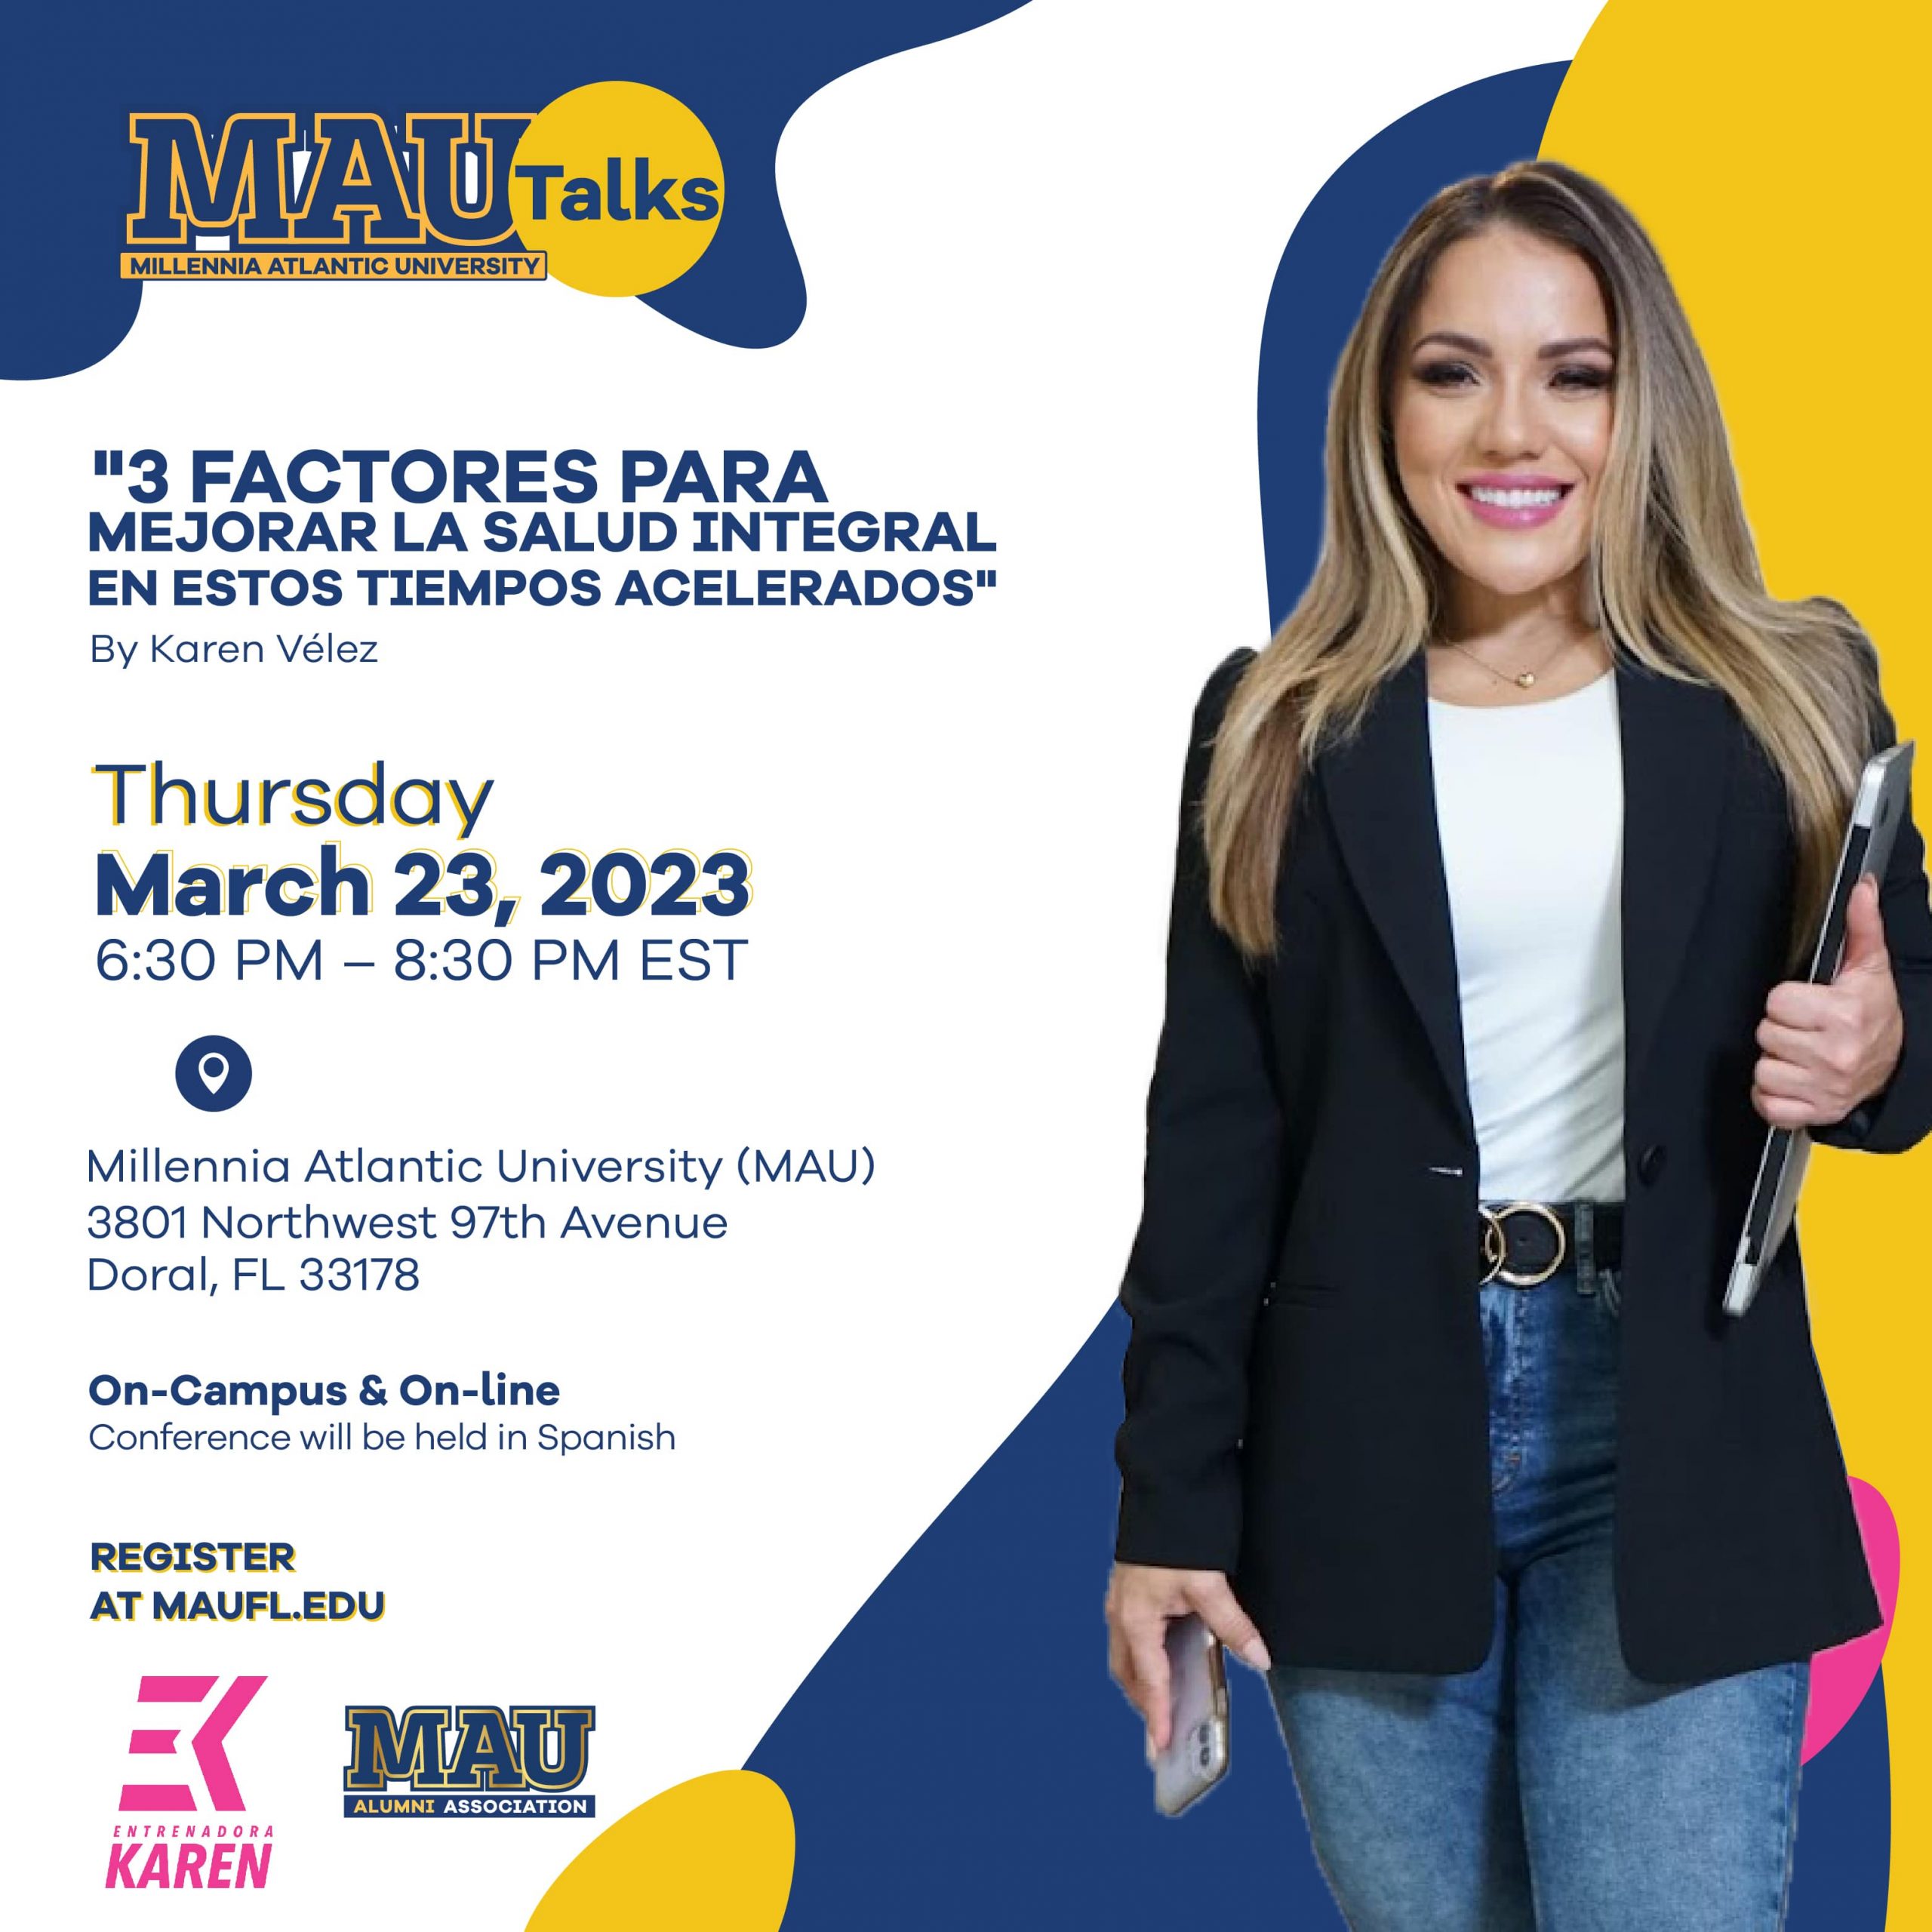 MAUTalks es una iniciativa de la Asociación de Ex-alumnos de Millennia Atlantic University y de la Universidad MAUFL.edu